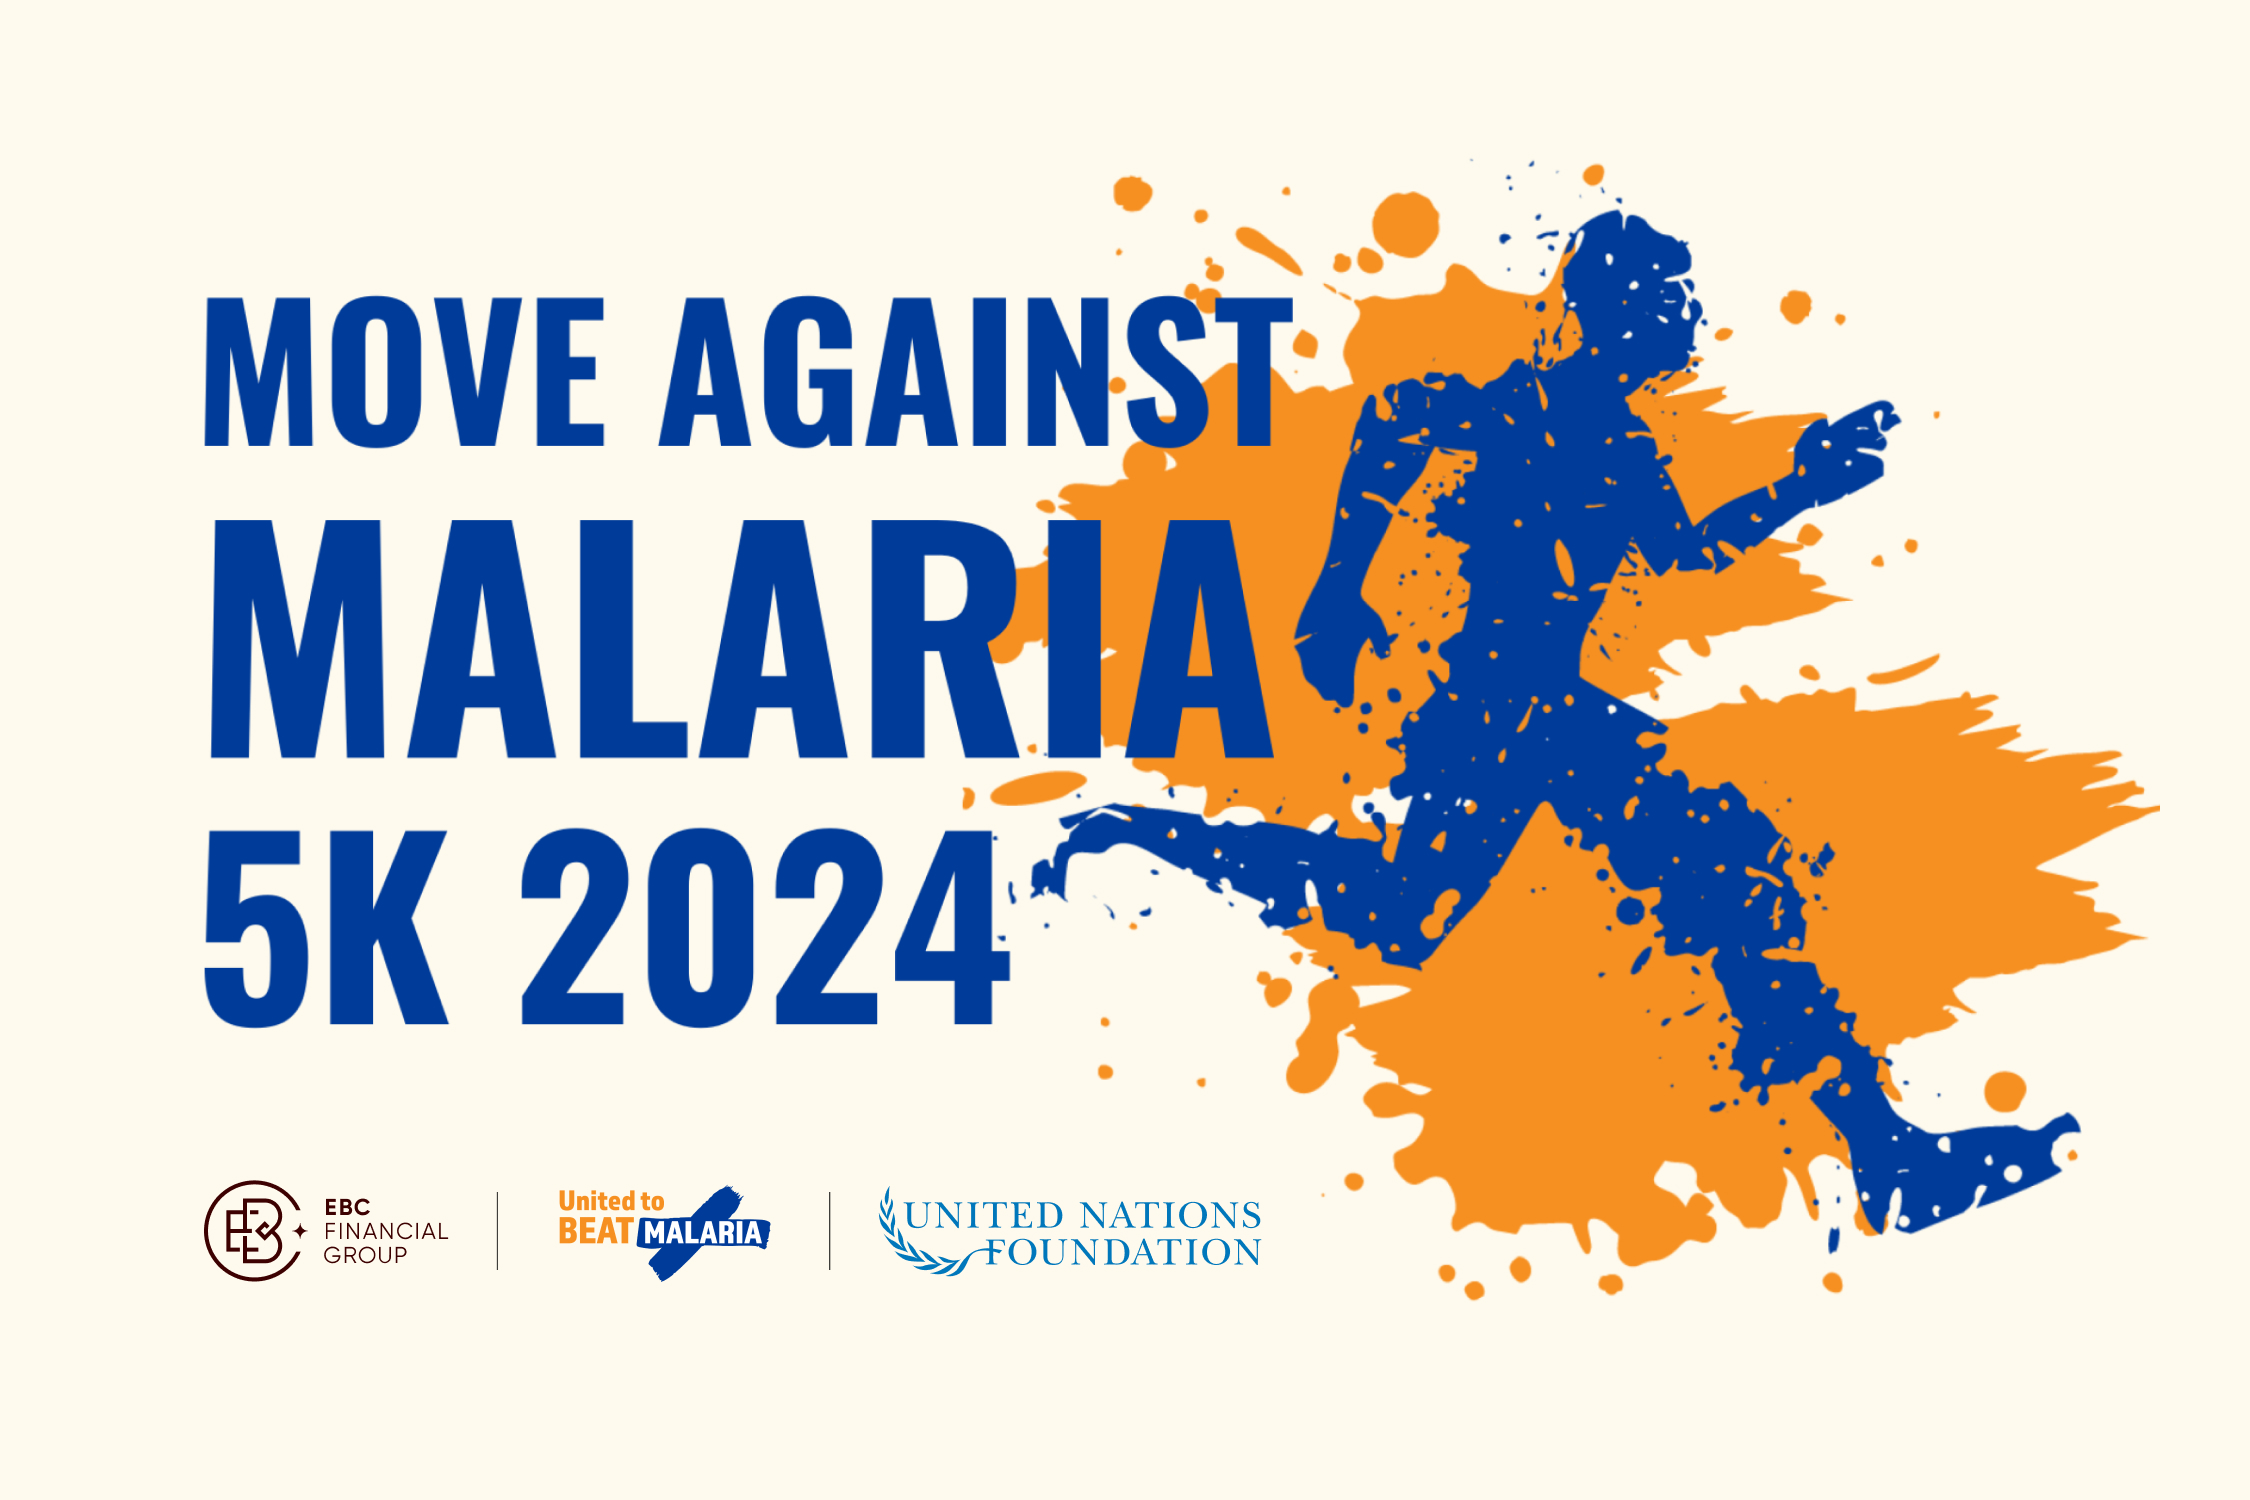 Entre el 25 de abril y el 5 de mayo de 2024, únete a los partidarios de todo el mundo en Move Against Malaria, un evento virtual para crear conciencia y recaudar fondos para apoyar las herramientas y programas de tratamiento de la malaria que salvan vidas.